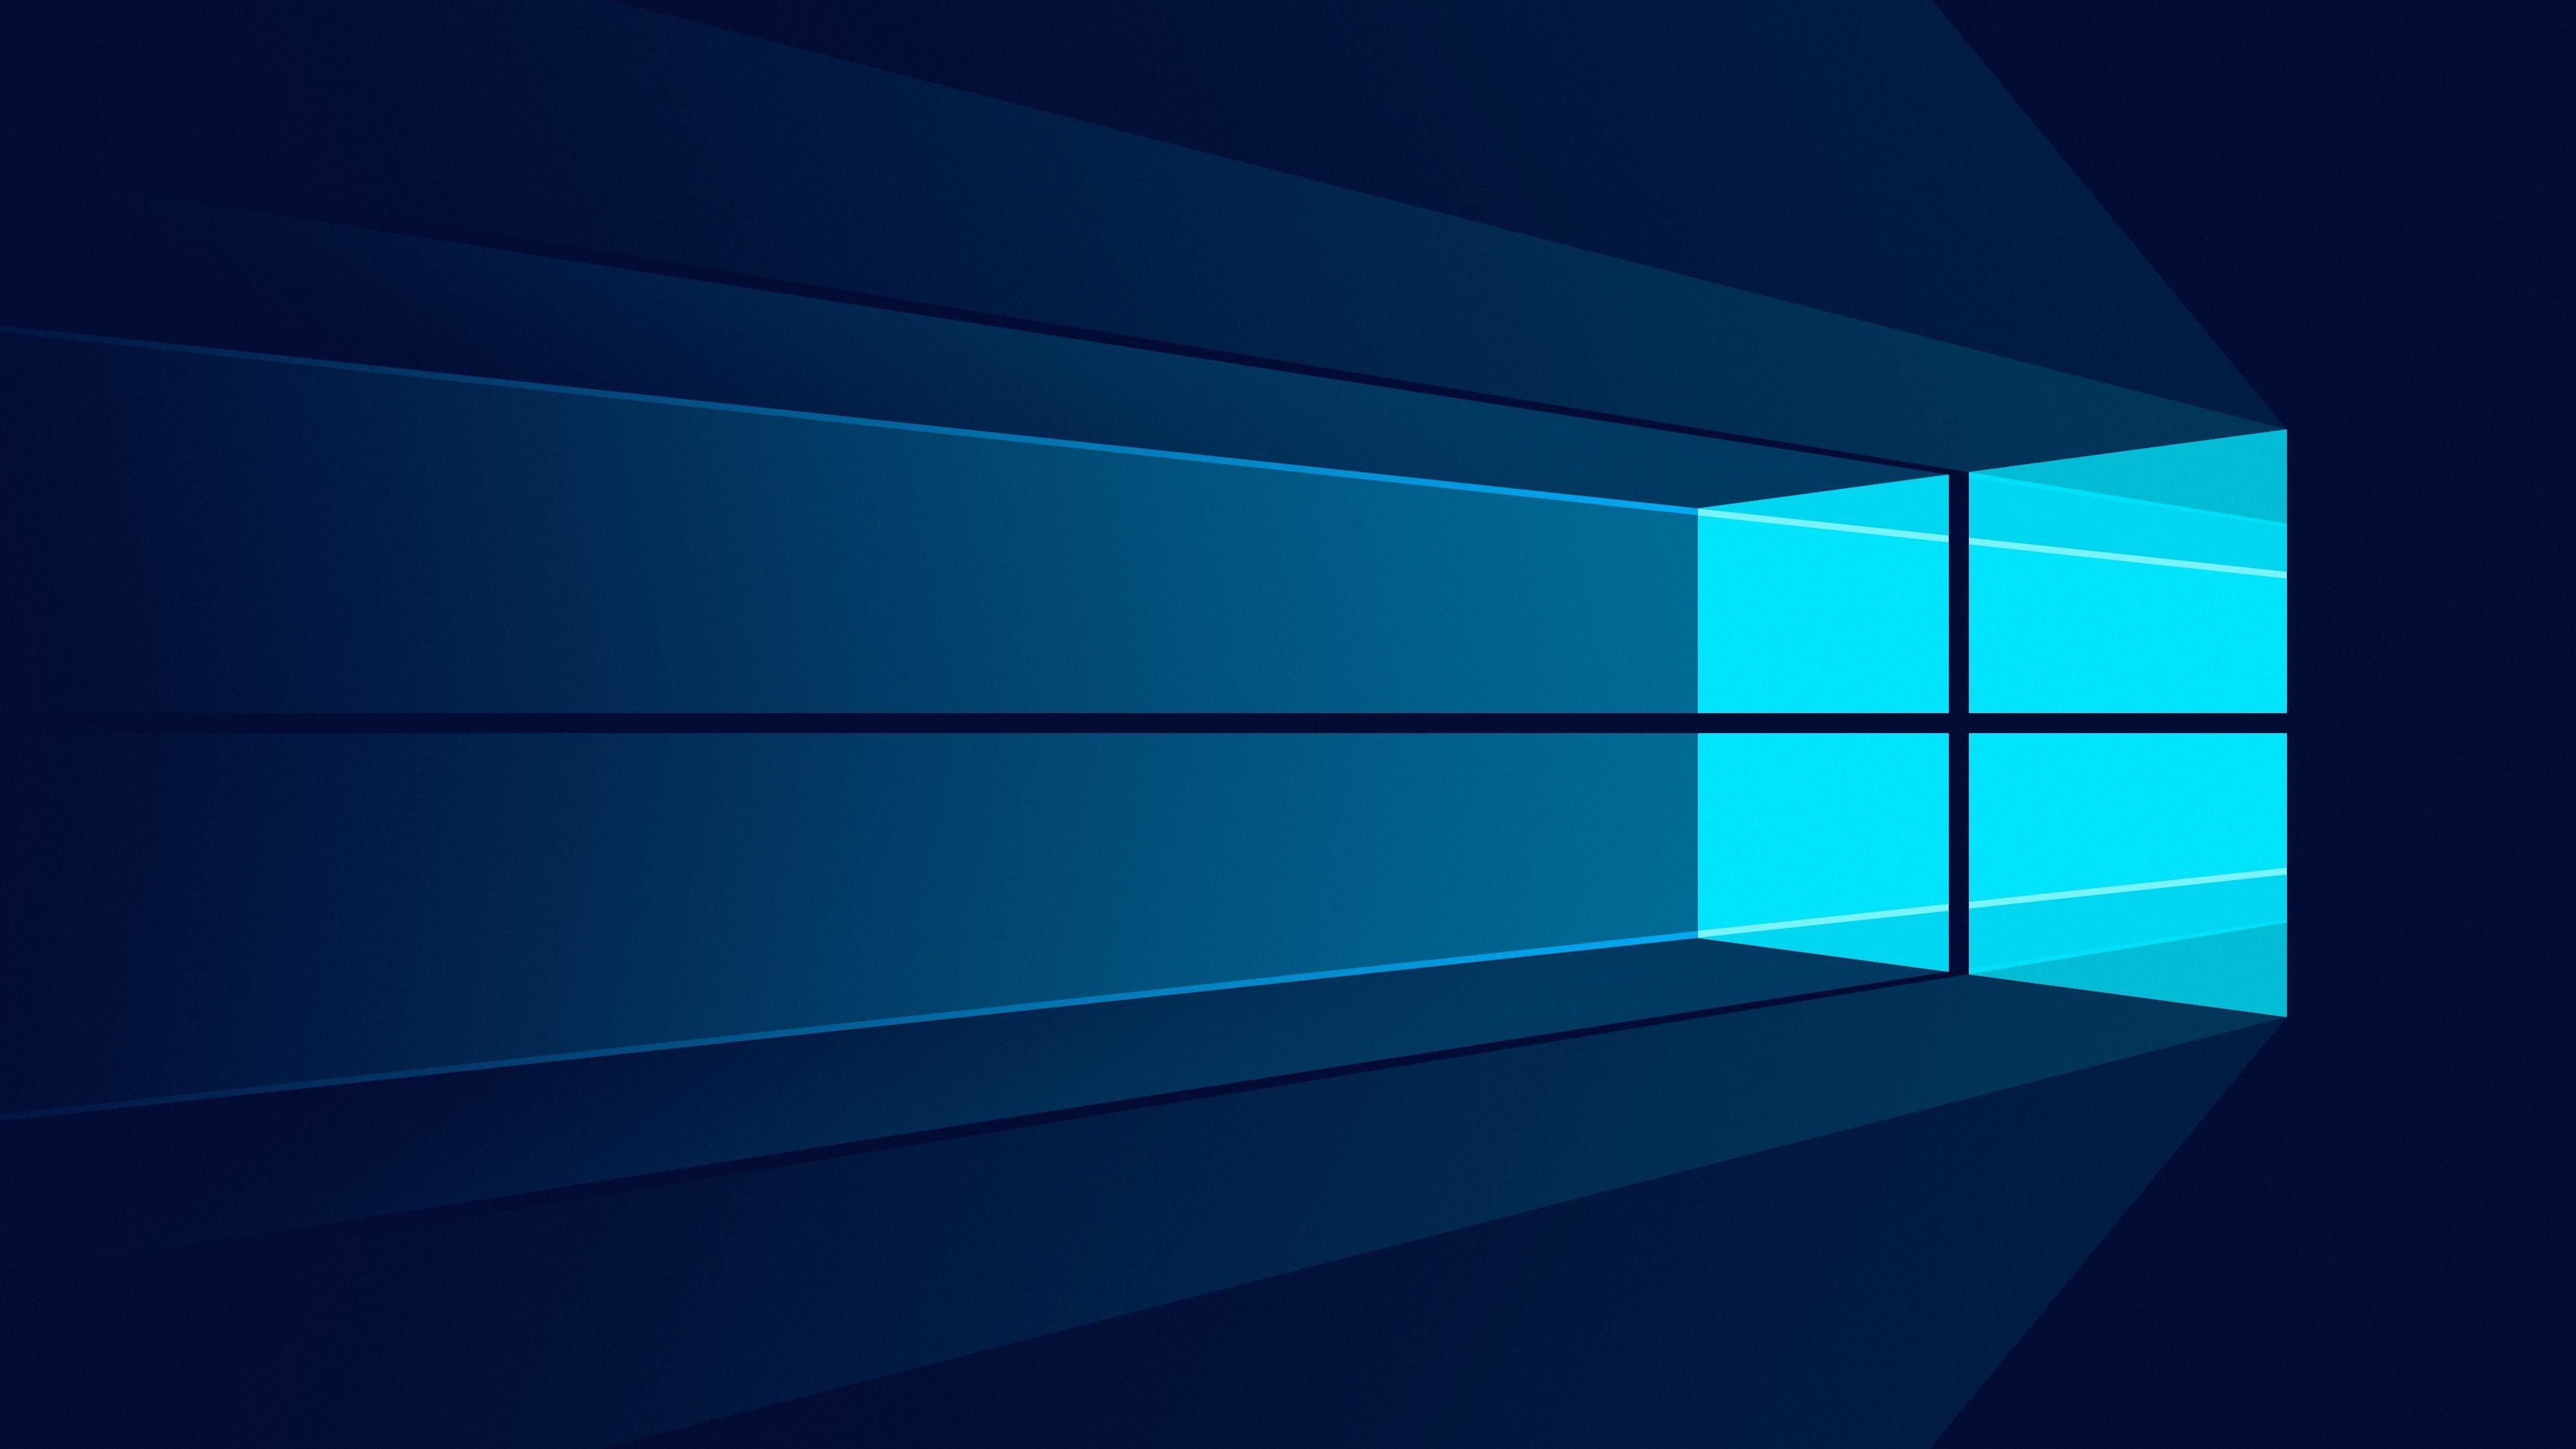 Windows 10 Minimal 1280x960 Resolution Wallpaper, HD